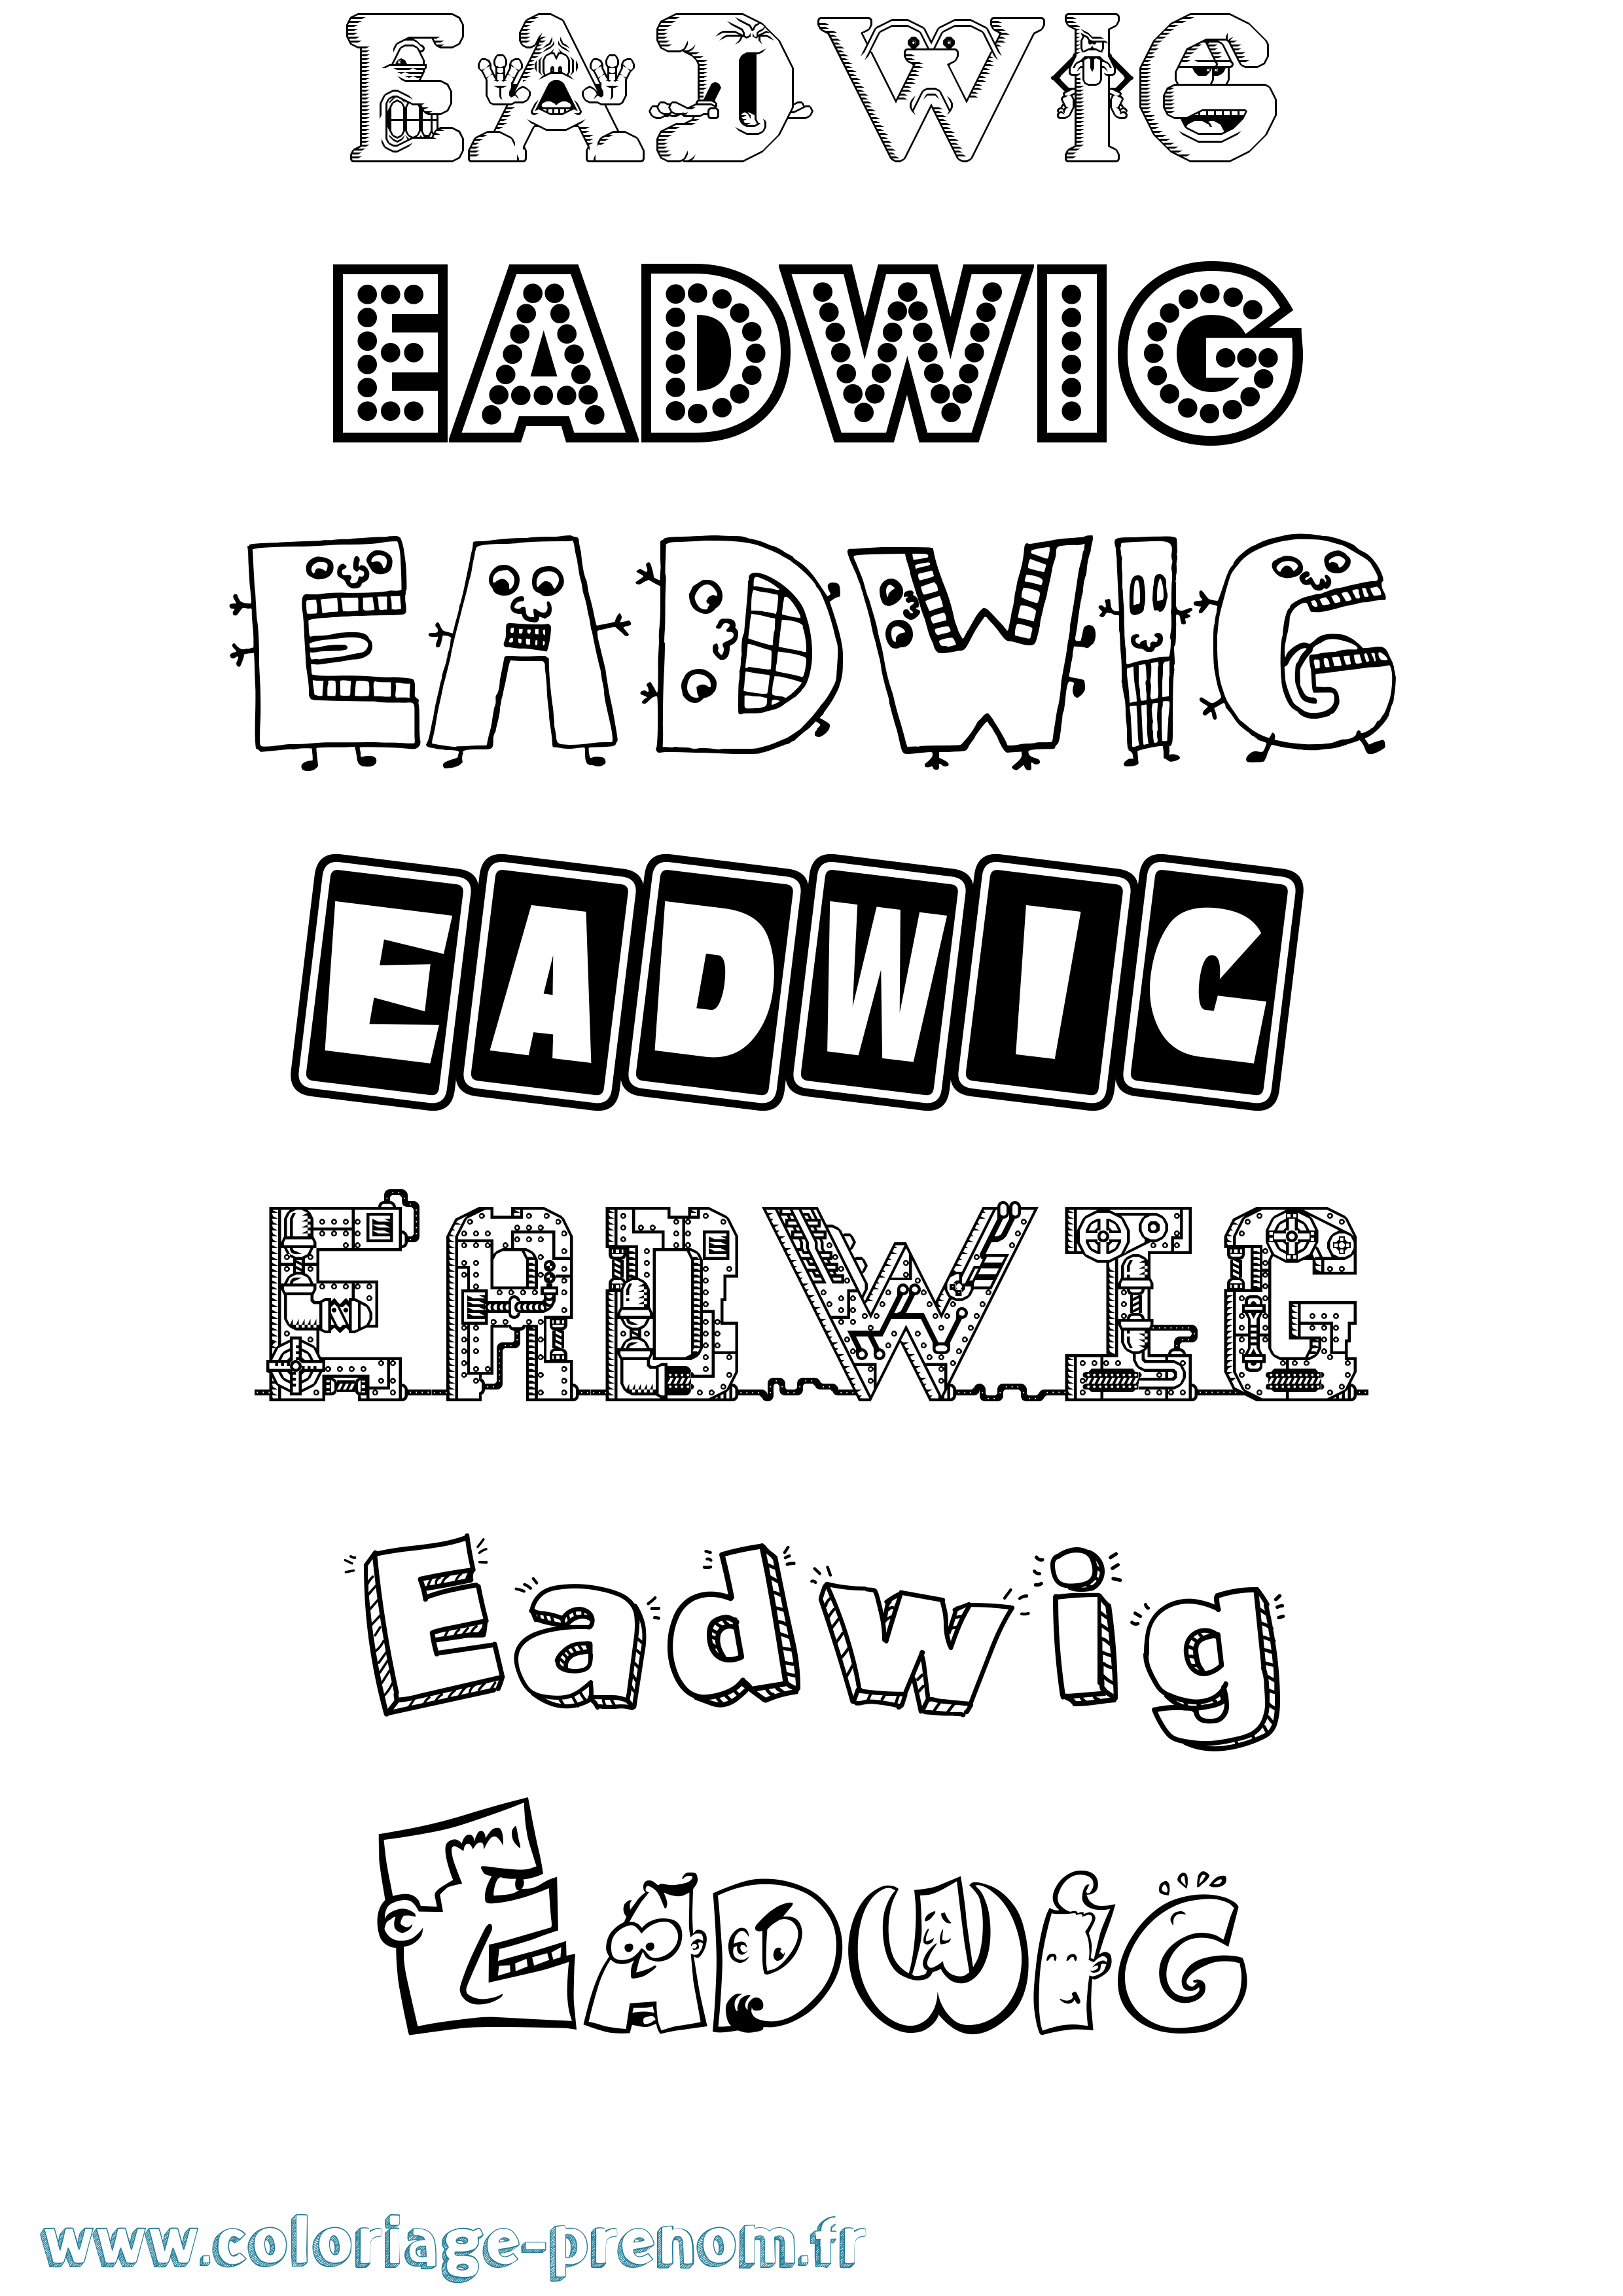 Coloriage prénom Eadwig Fun